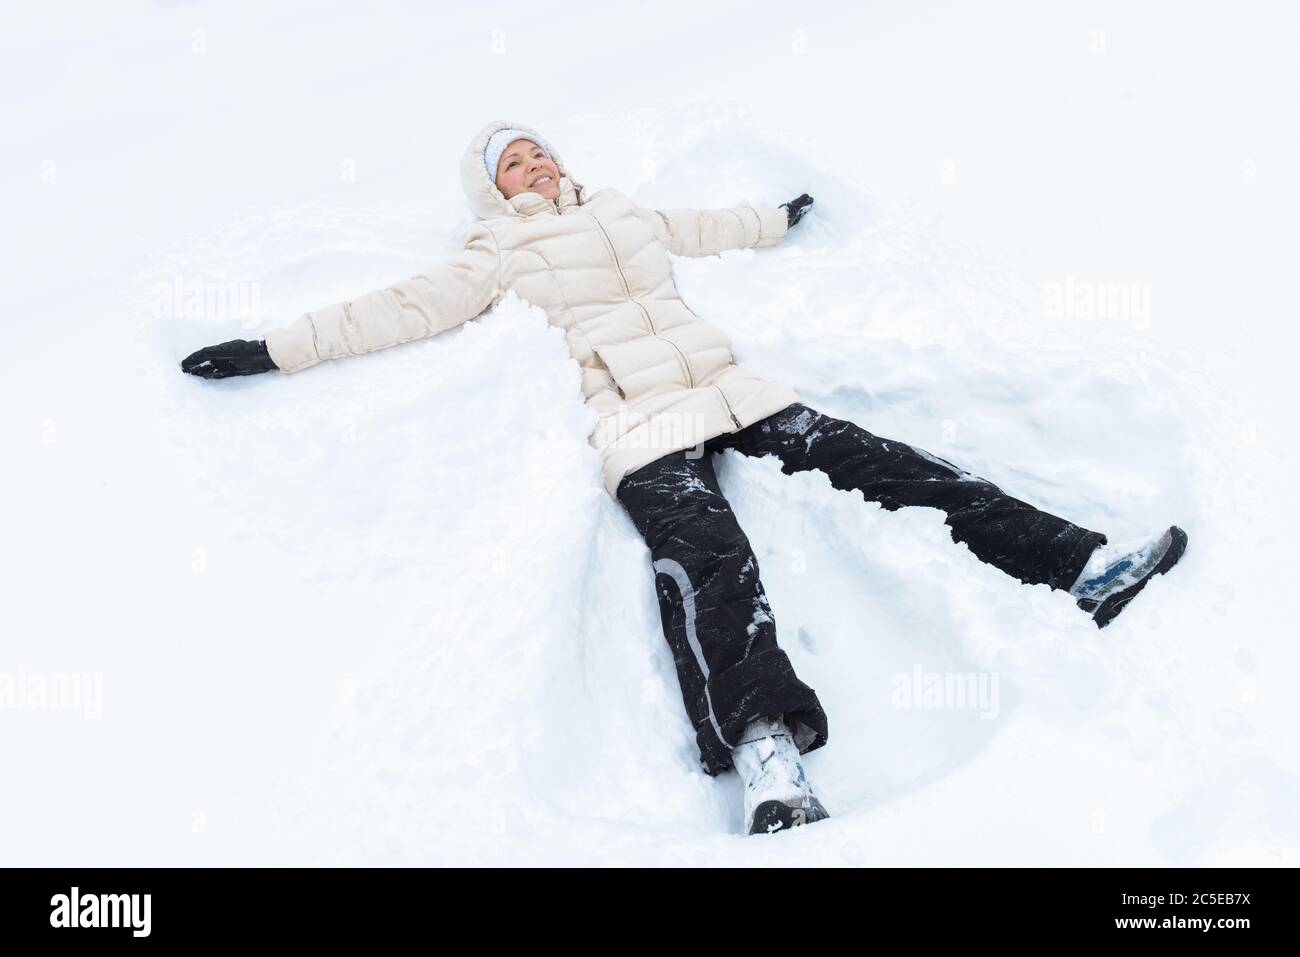 Porträt einer jungen Frau, die auf einem Schnee liegt. Das verspielte Mädchen schafft einen Schneeengel bei Schneefall. Winterspiele im Freien. Stockfoto